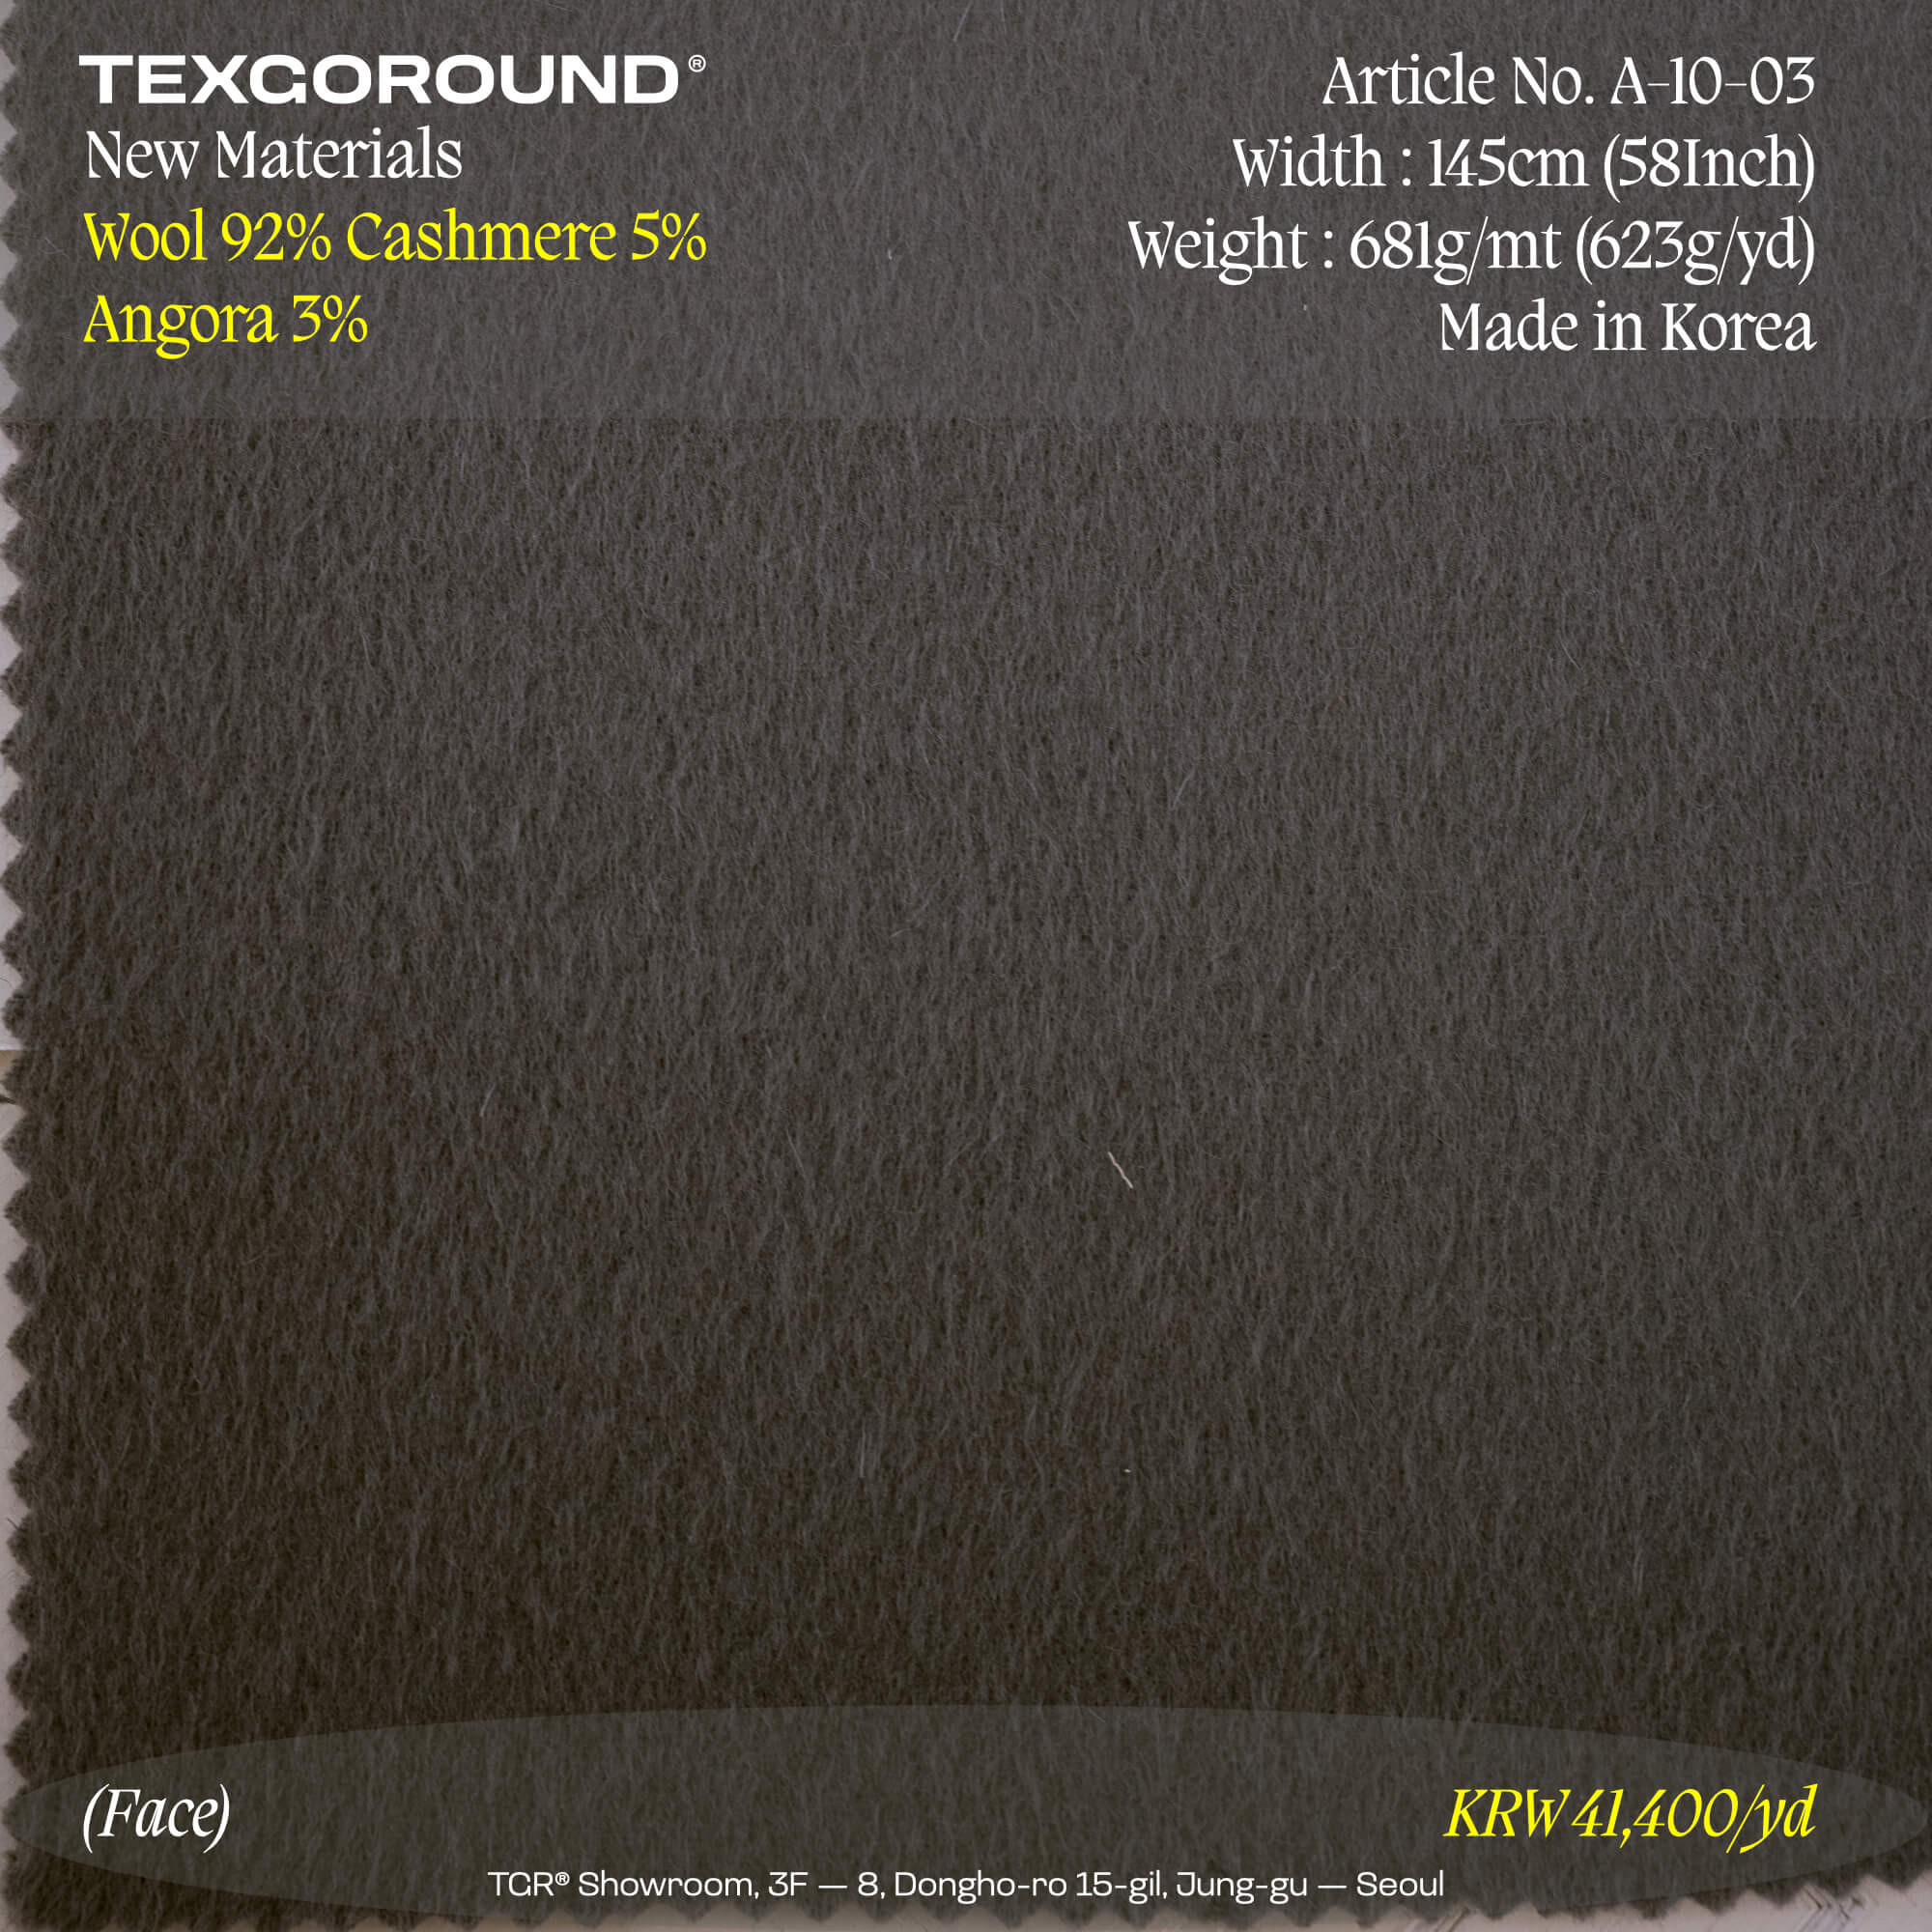 TEXGOROUND® New Materials (1) - Wool 92%, Cashmere 5%, Angora 3%